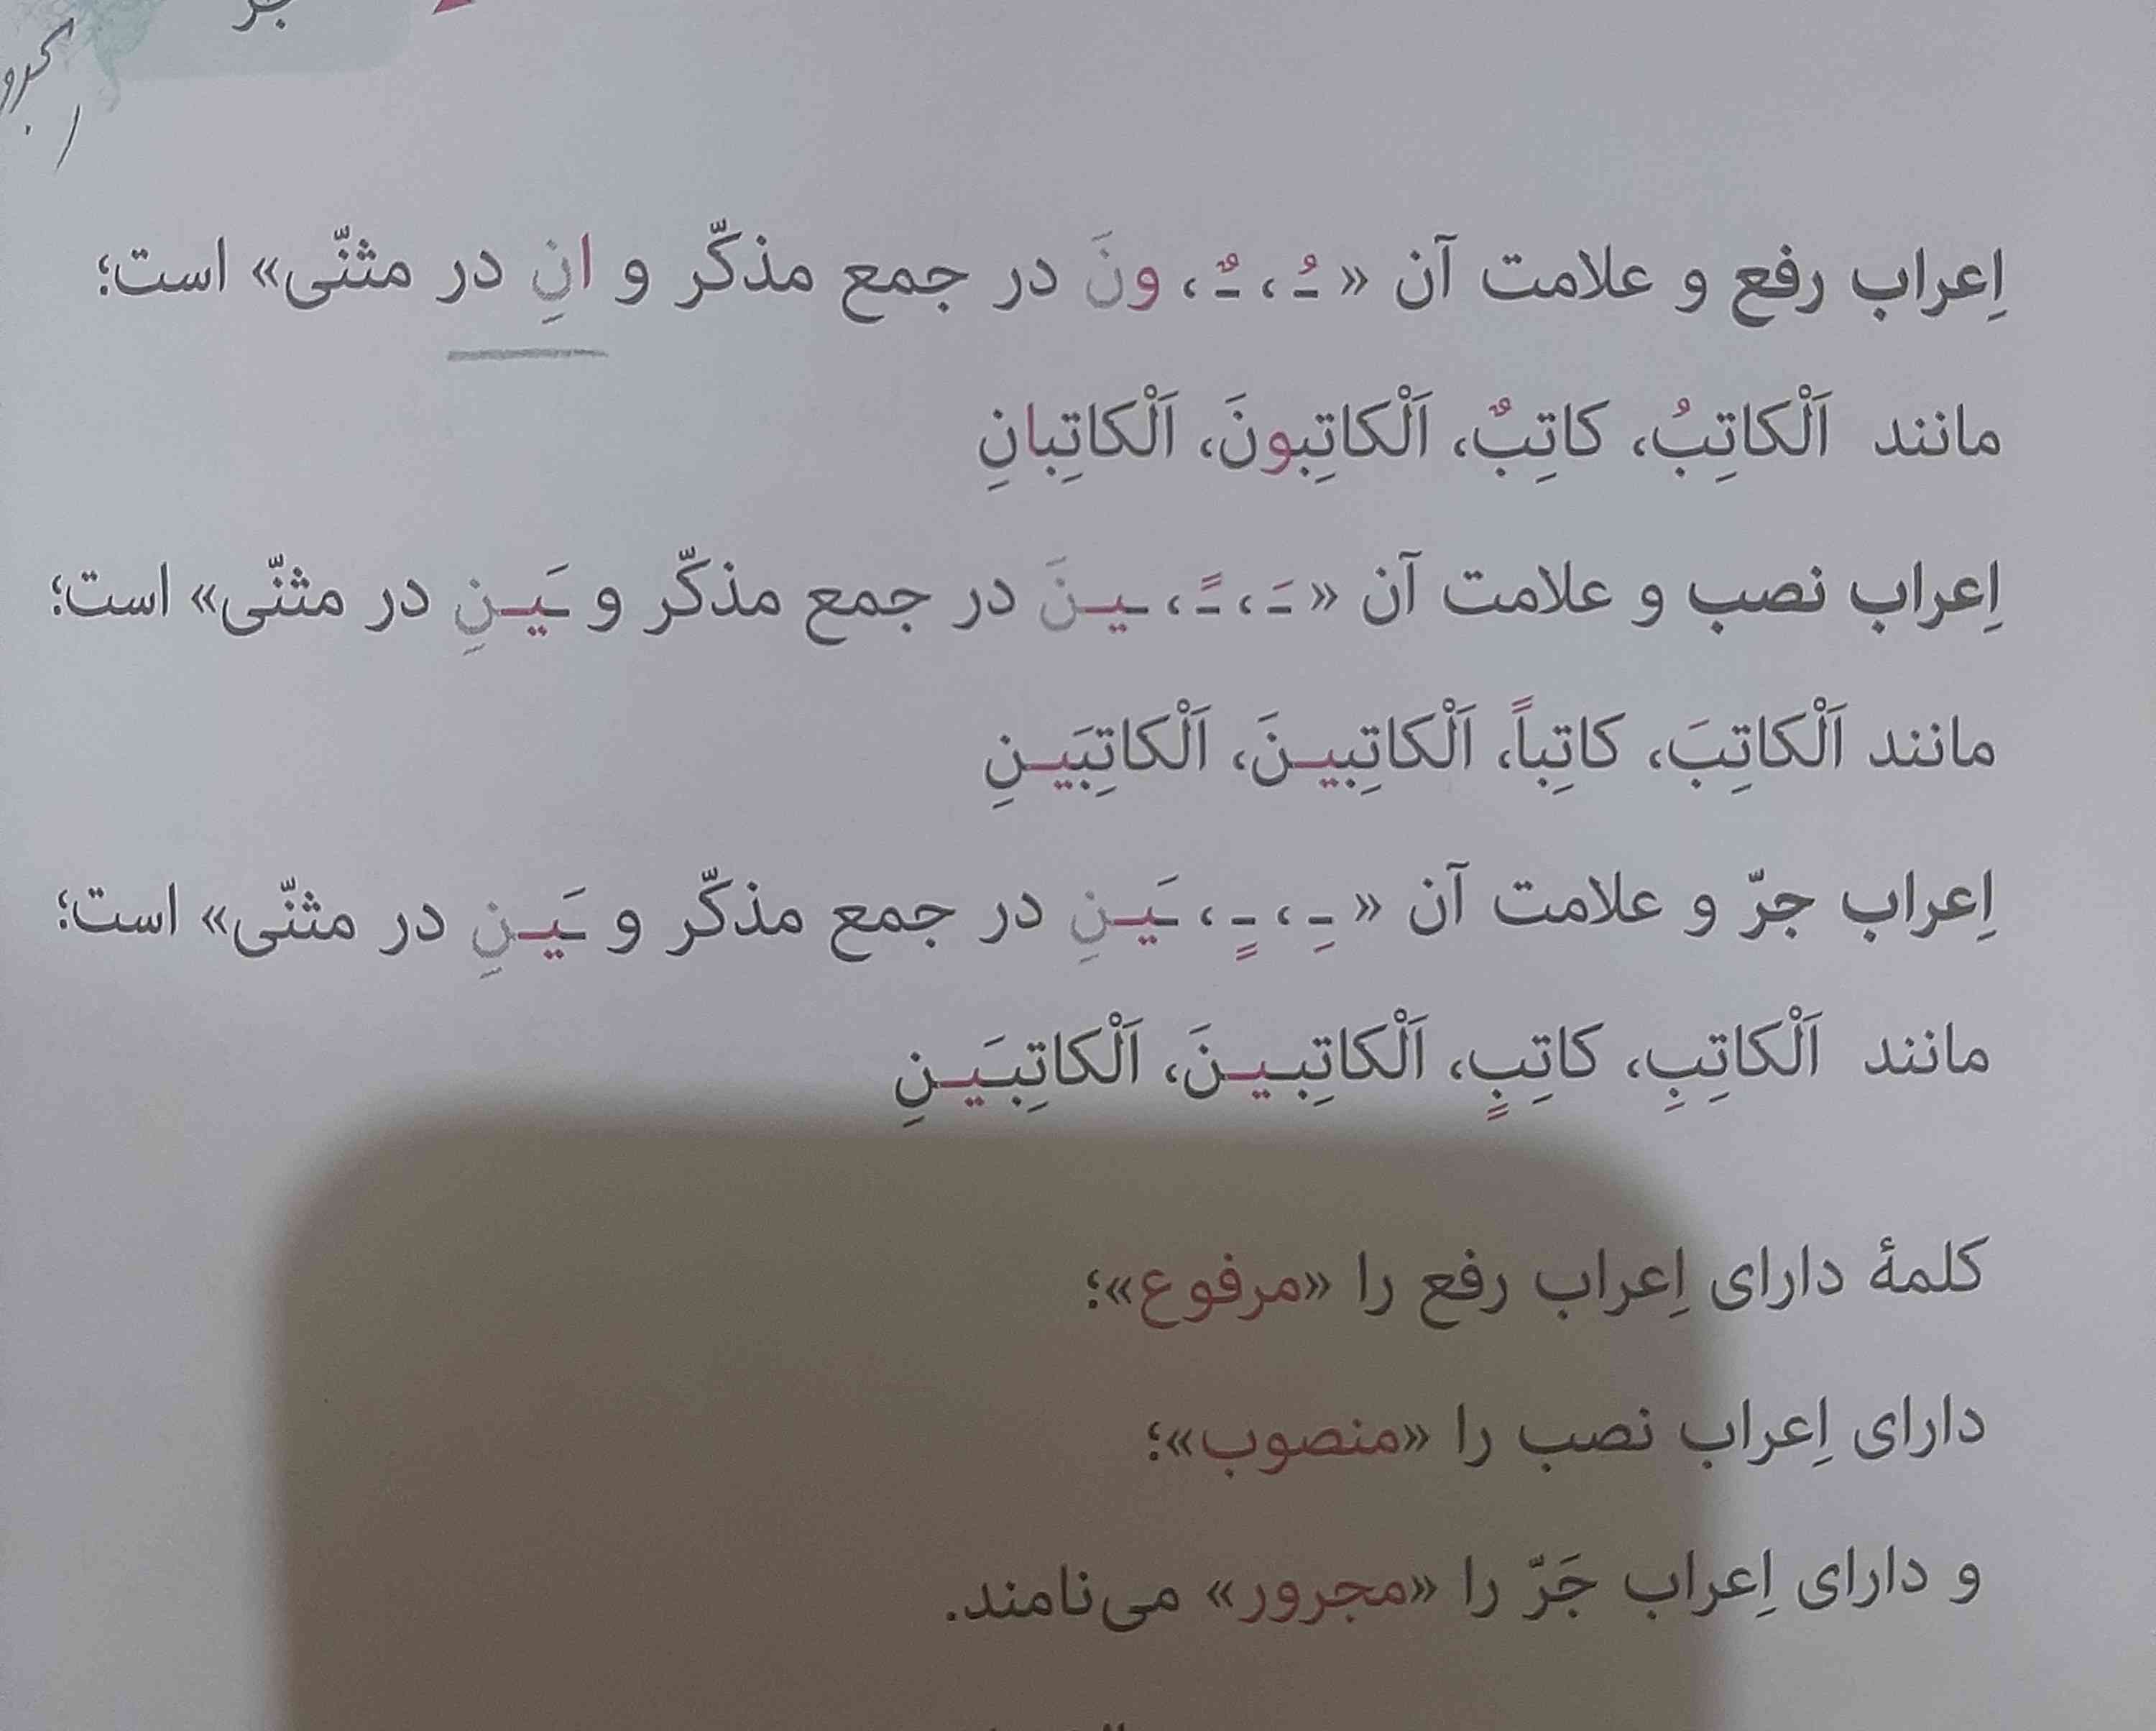 لطفا بگید از این قسمت عربی چطوری تو امتحان سئوال میاد مثال بزنید ازشون 
معرکه میزنم💓